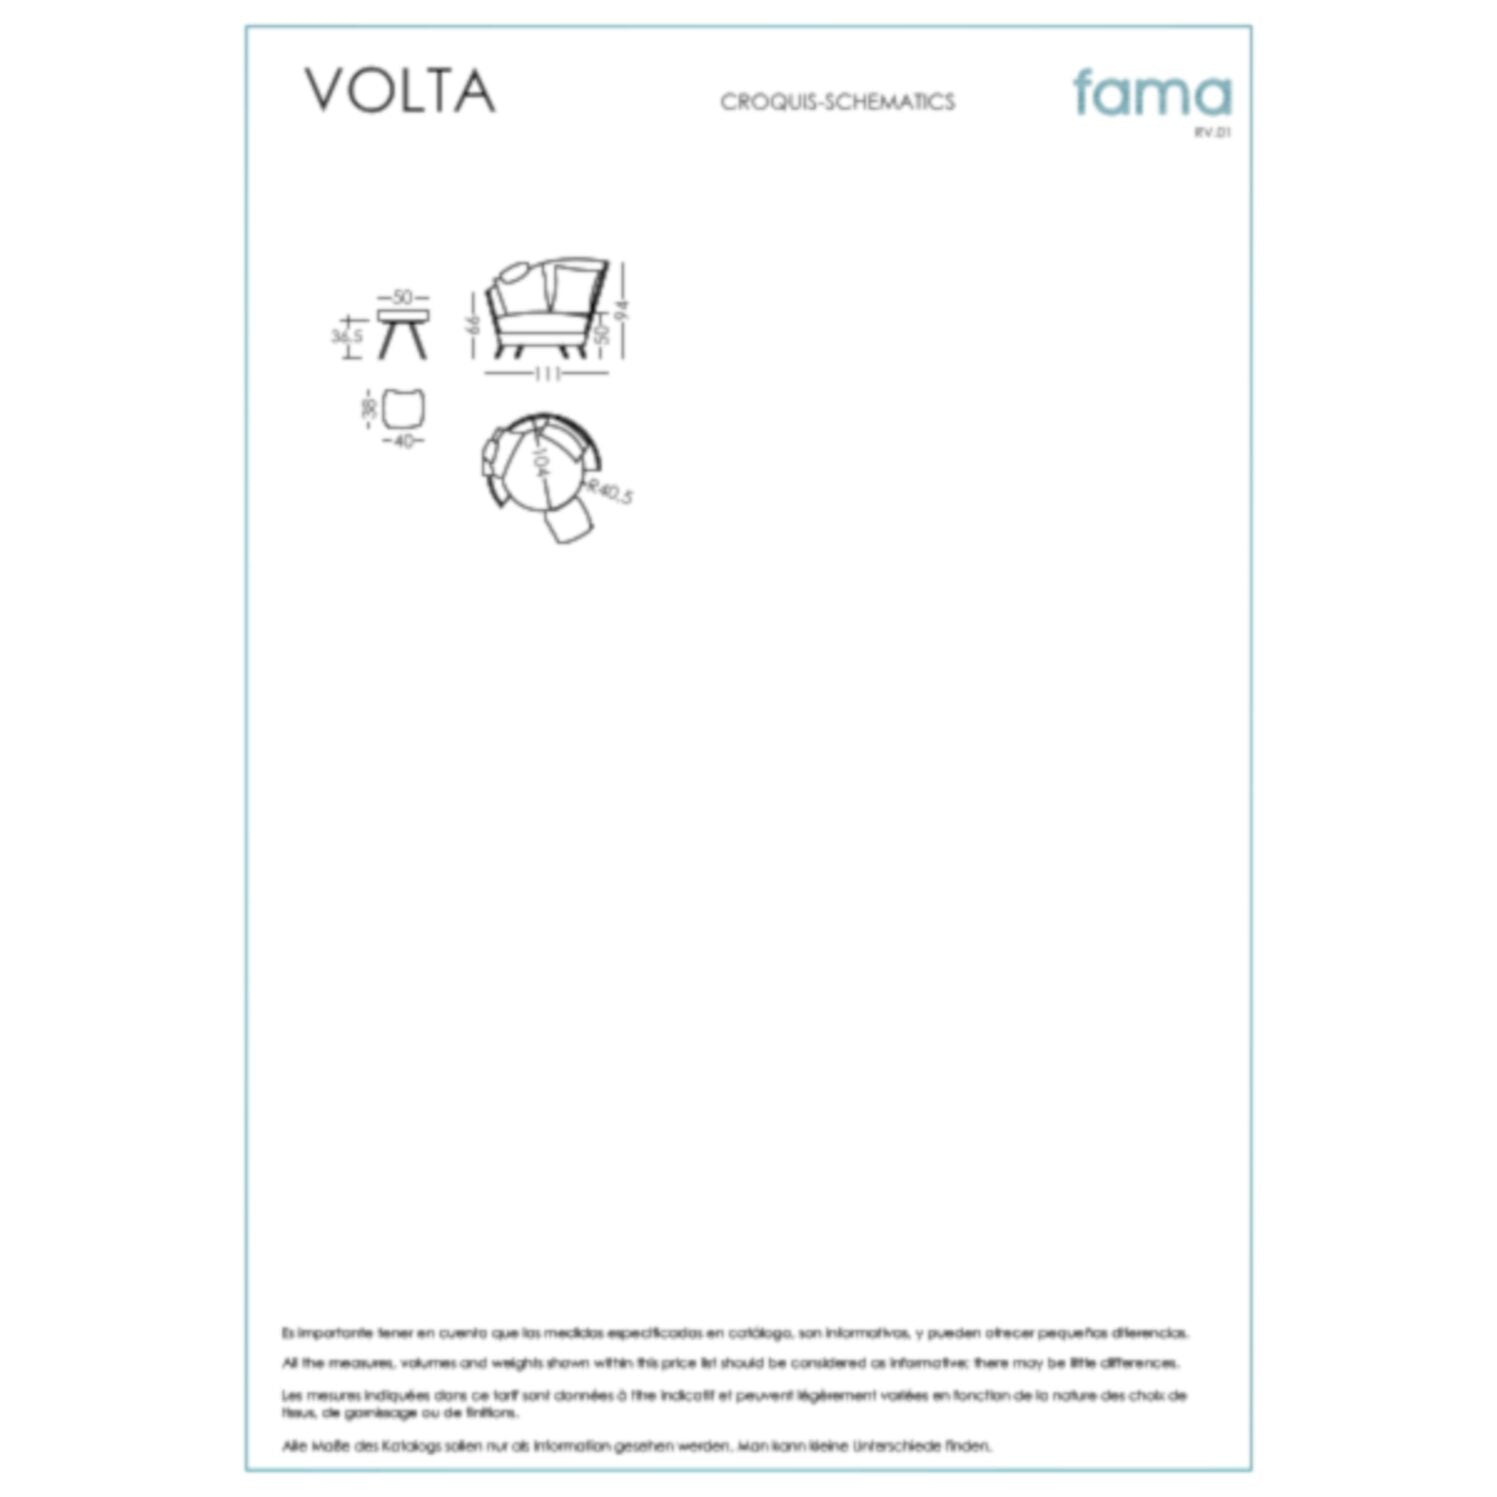 Fama ,Volta' Sessel - verschiedenste Stoffe & Farben möglich